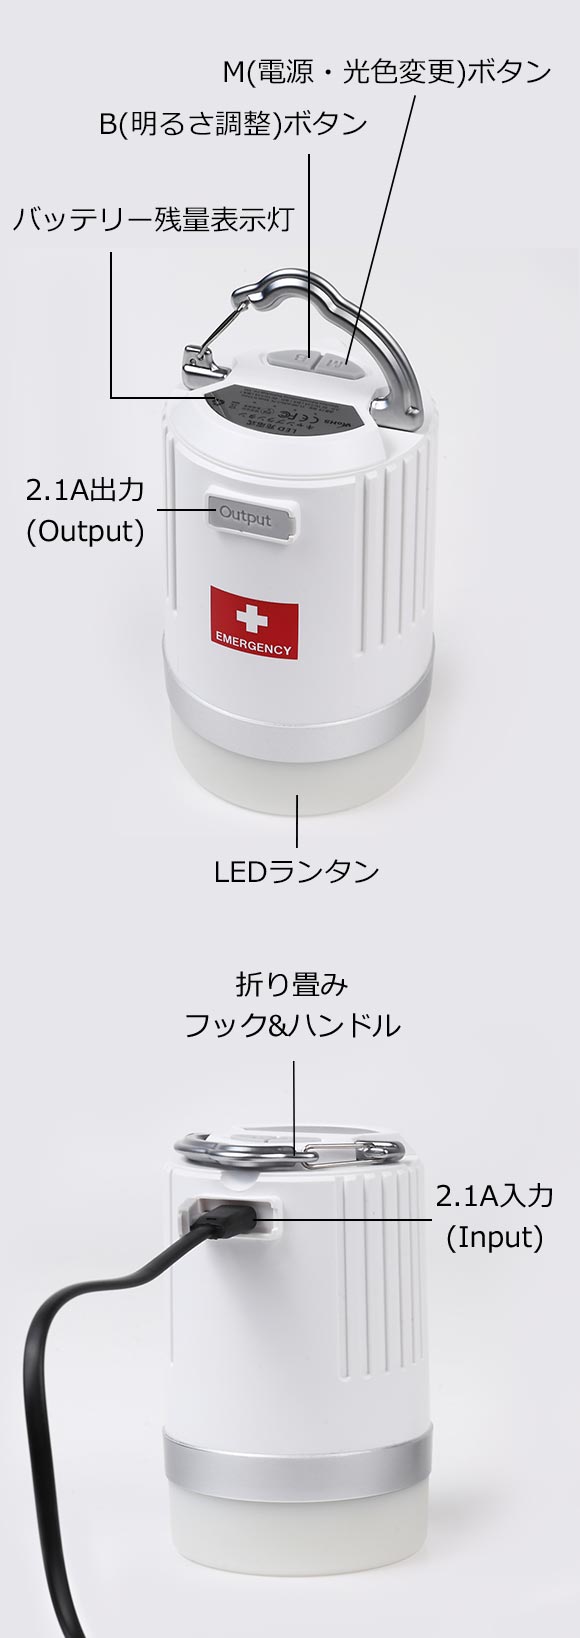 緊急時の必需品 11灯 LED ランタン 防災非常用 g6bh9ry